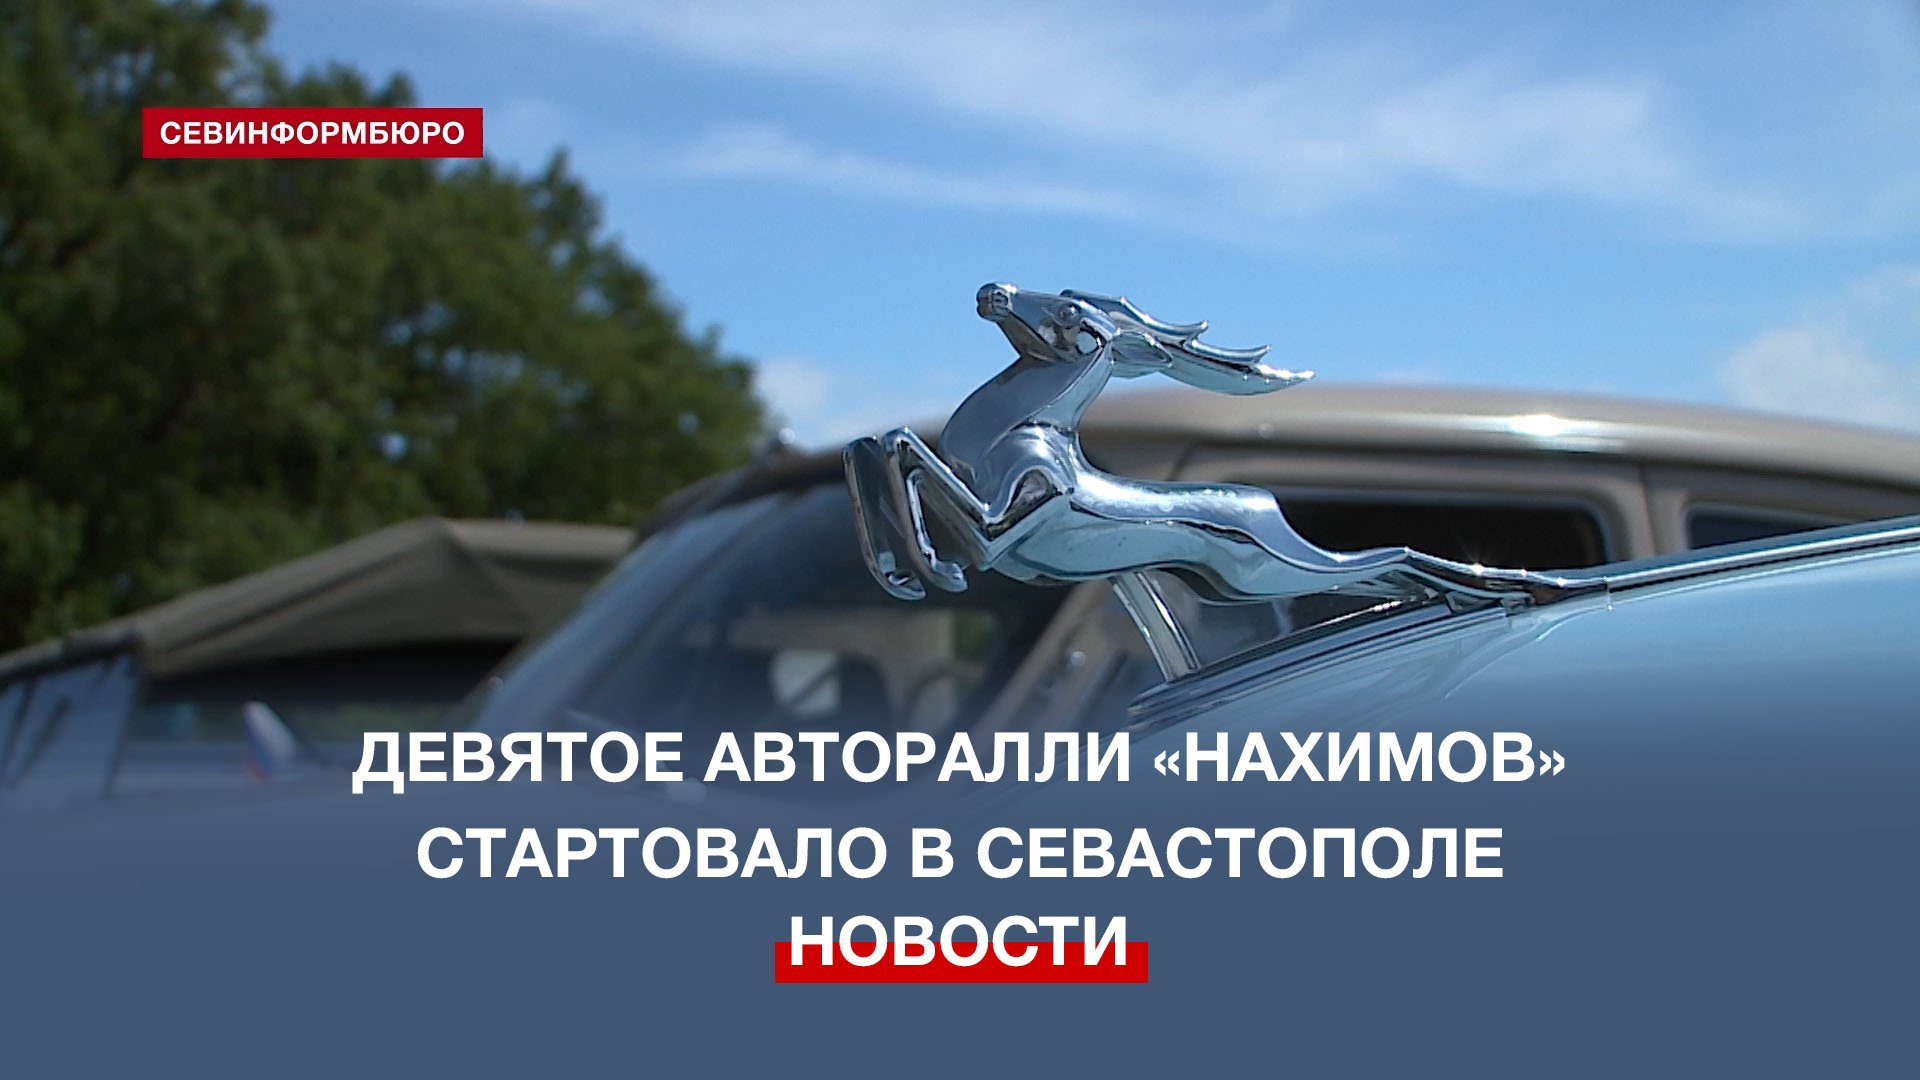 Севастополь встретил Первомай стартом традиционного ралли ретро-автомобилей